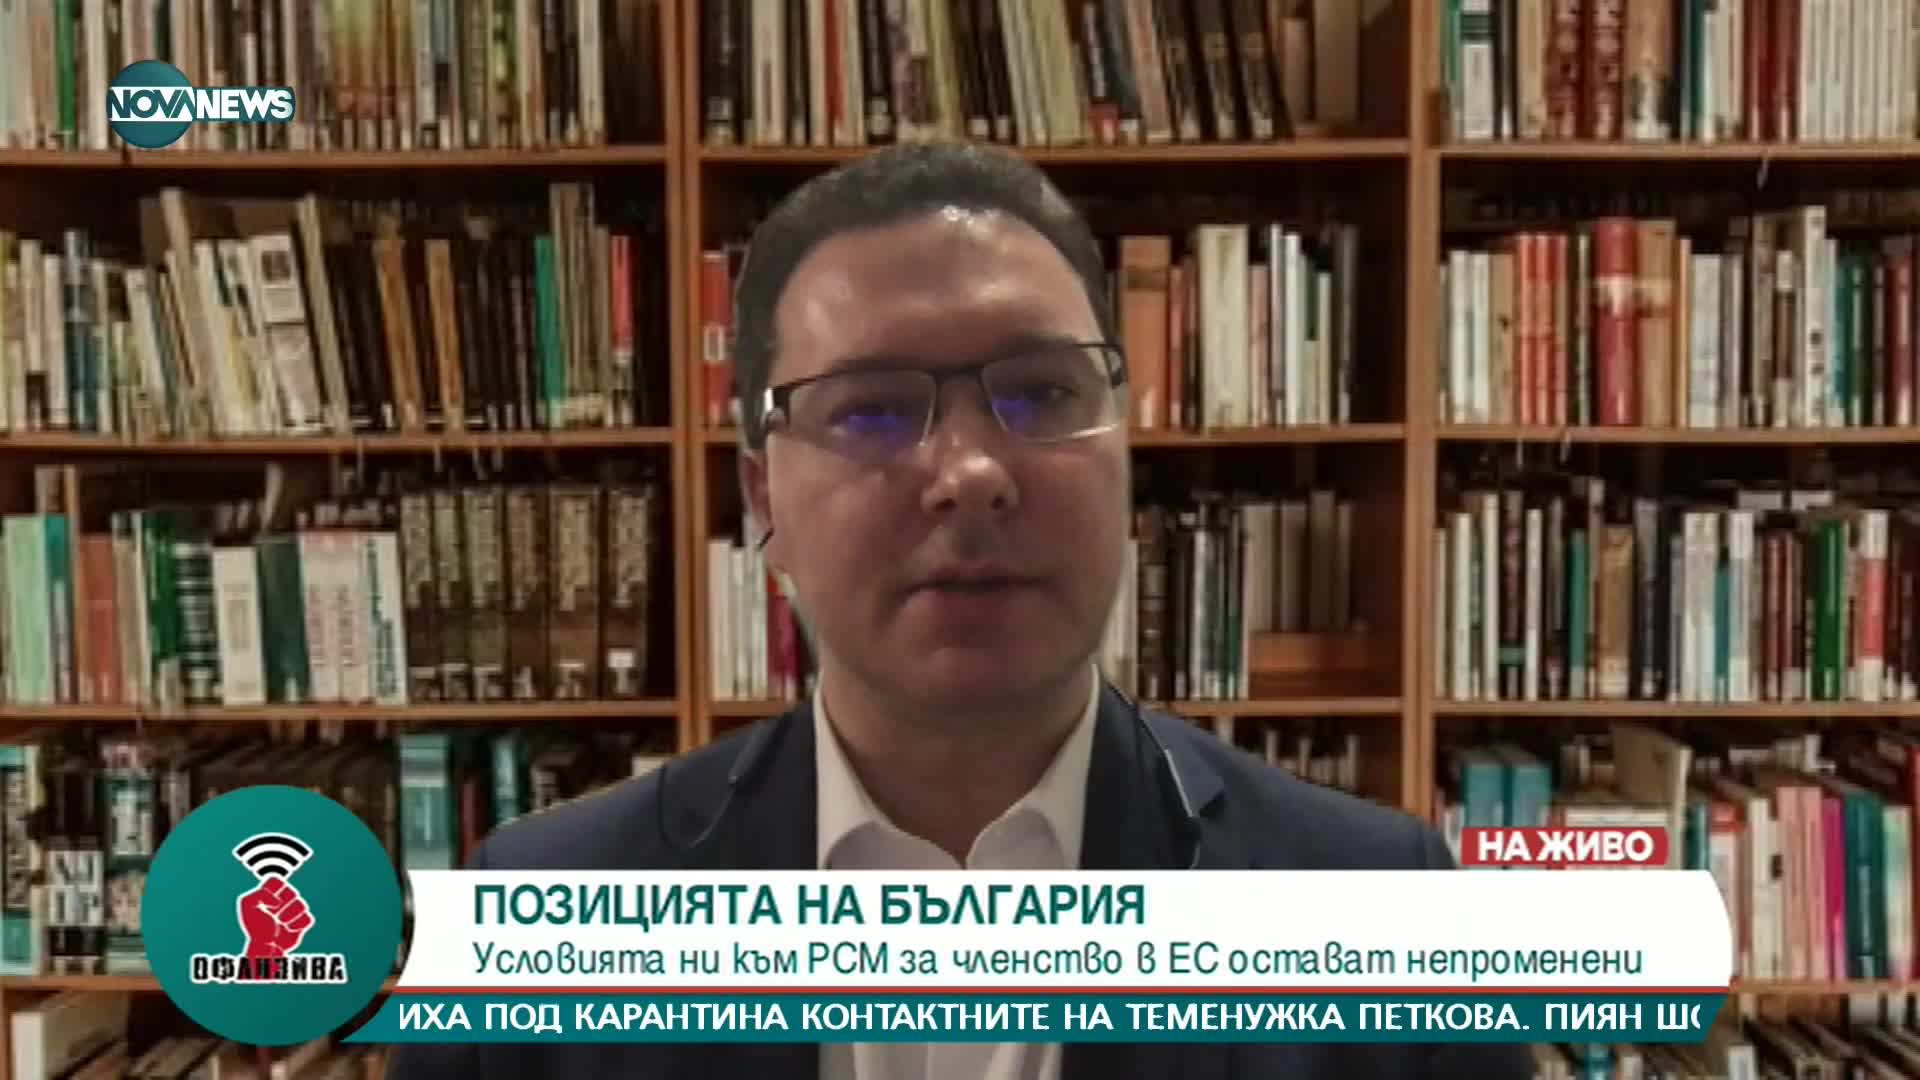 Даниел Митов: Смущаваща е нетърпеливостта на Кирил Петков да отиде в Скопие, би трябвало РСМ да е ак